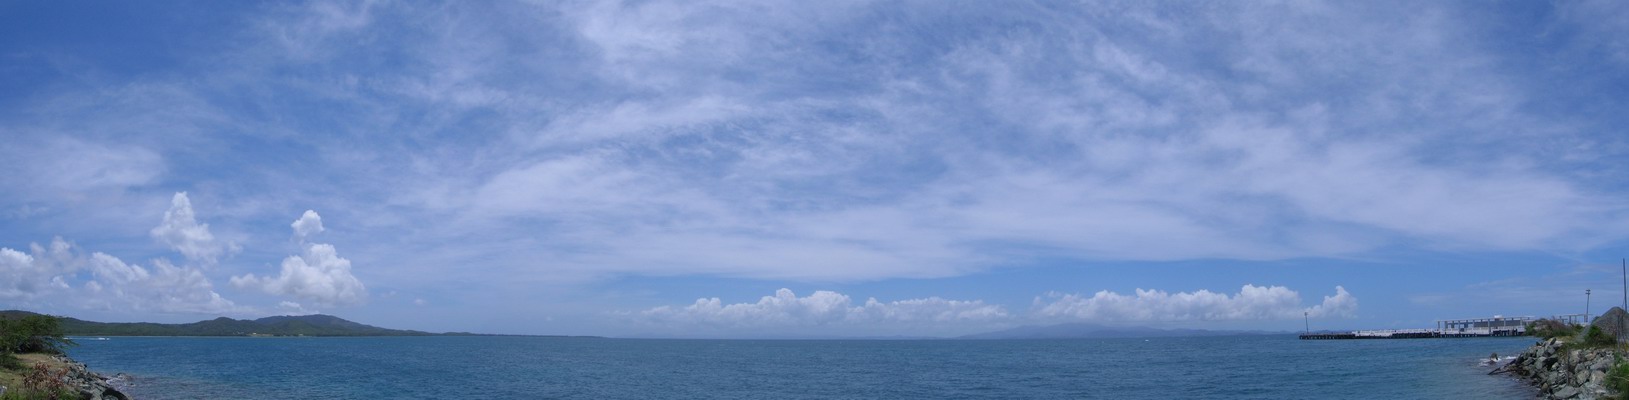 Pohad smerom na Vek Ostrov. Vrazn kopovit oblanos v diake nad pralesom El Yunque. Vavo Monte Pirata - najvy bod na ostrove (301 m.n.m.). (Aprl 2006)